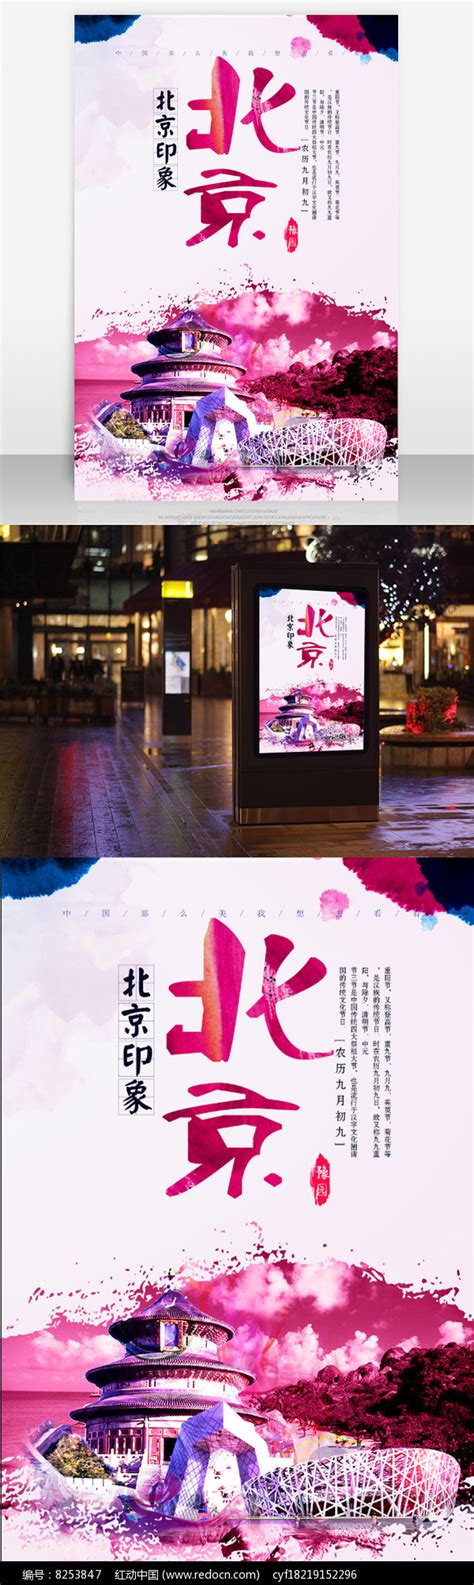 2020北京工艺品展览会|创意工艺品展|手工艺品展-文亭艺社